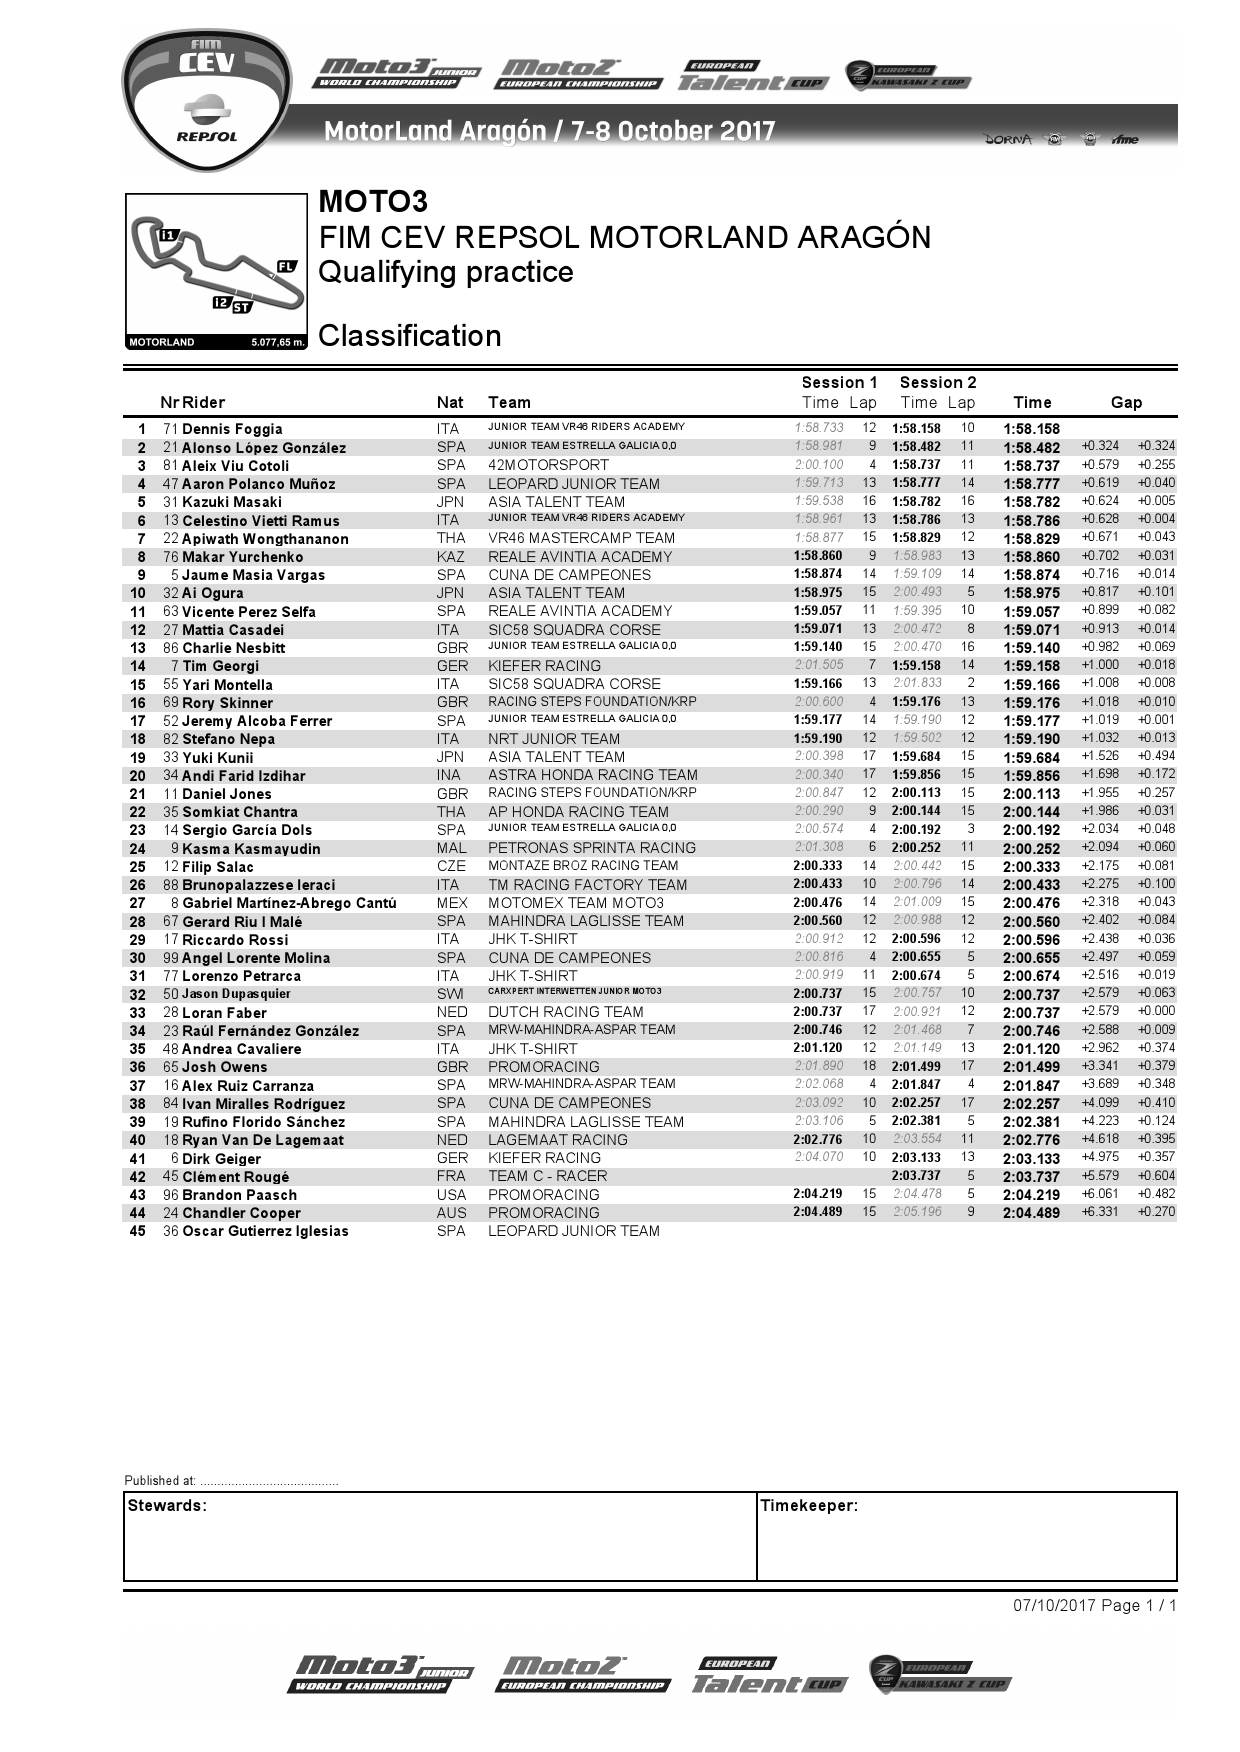 Результаты квалификации предпоследнего этапа CEV Moto3, Motorland Aragon